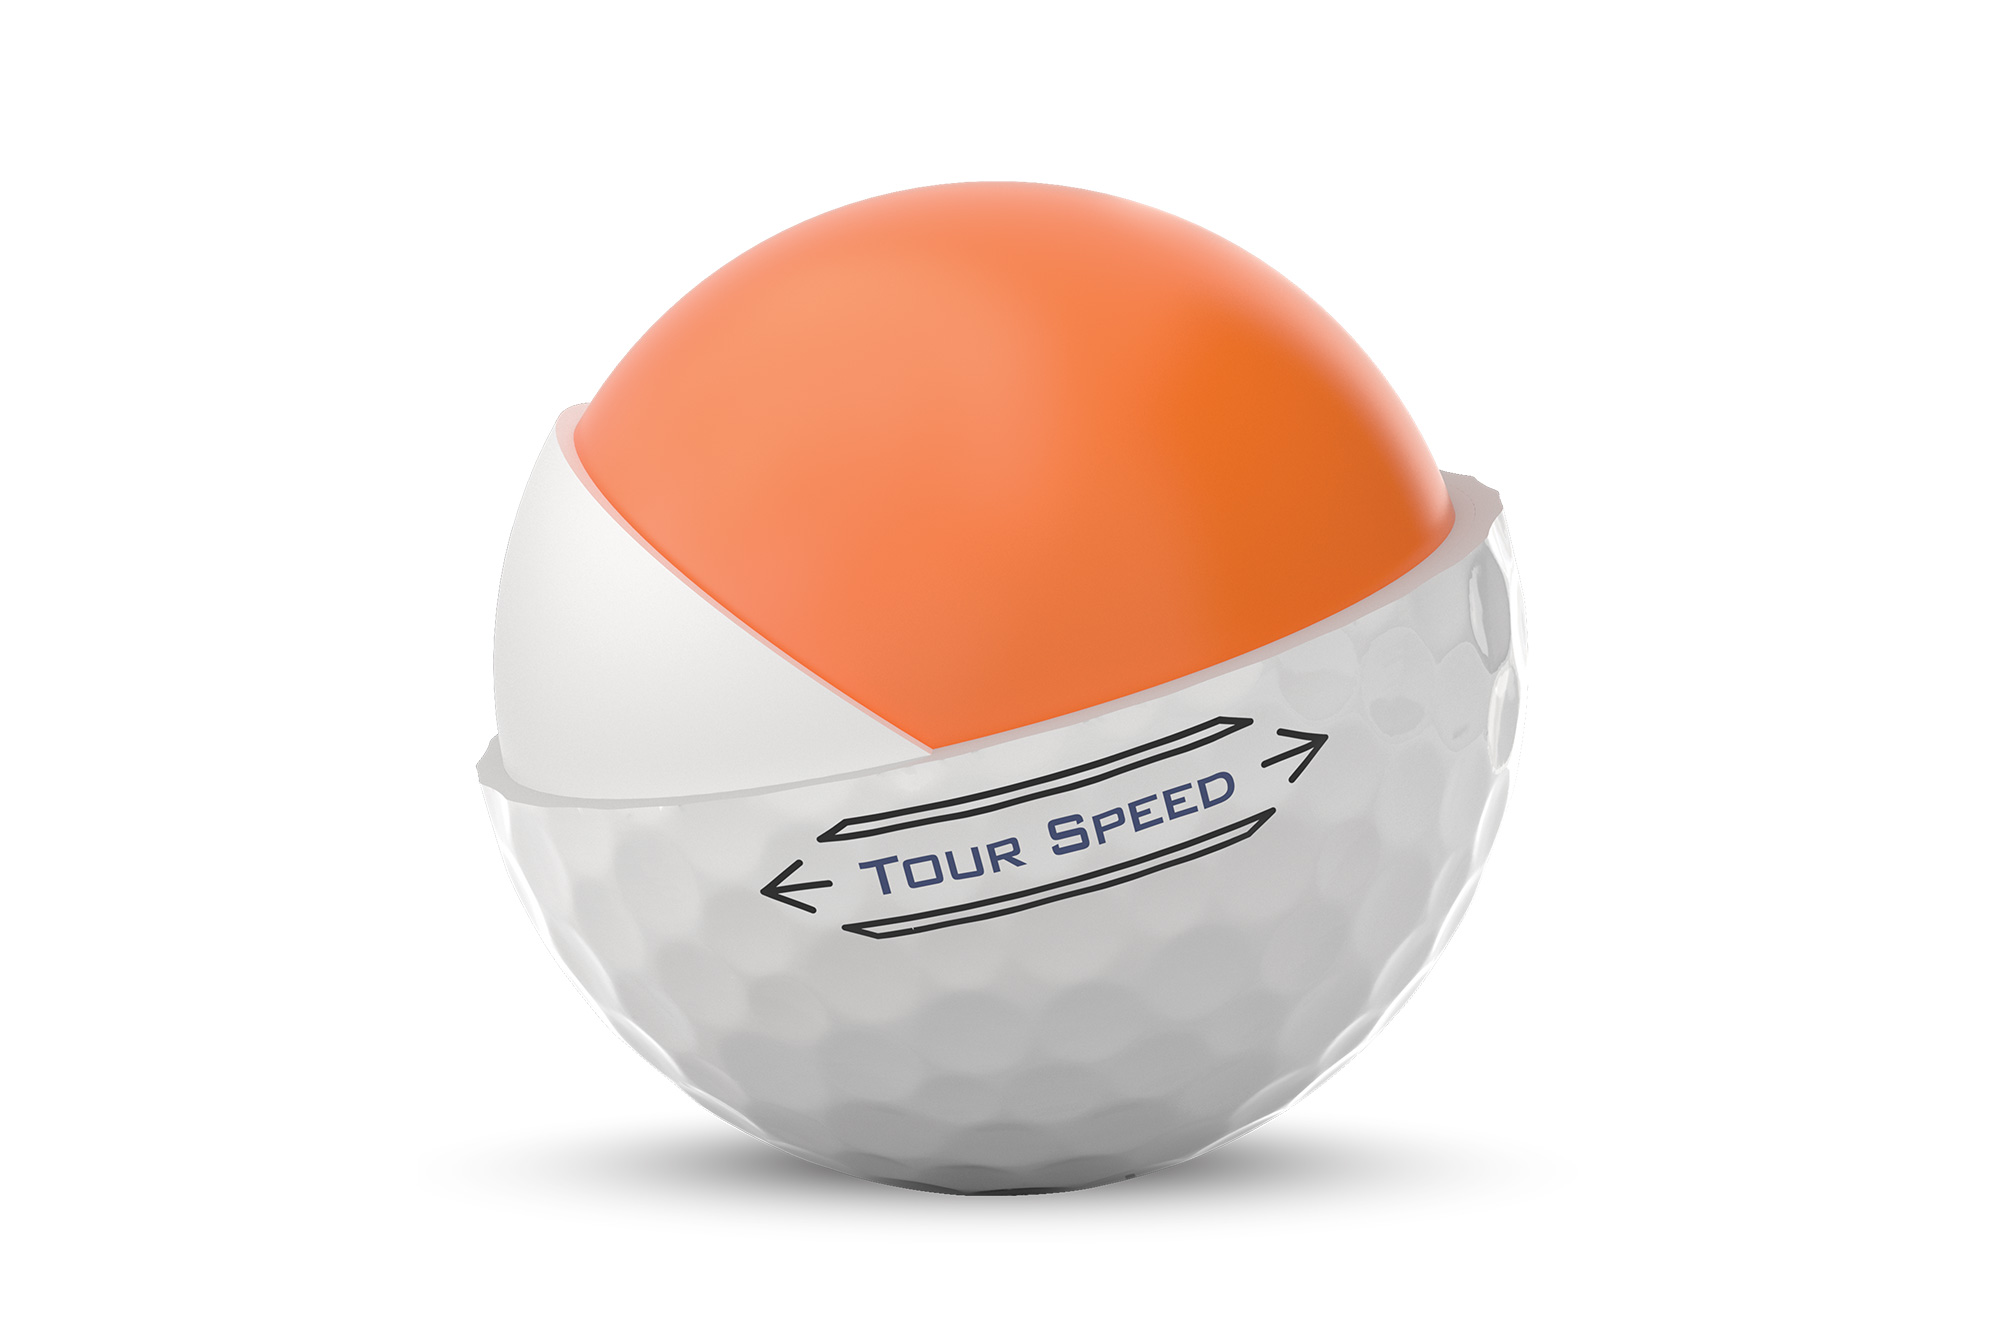 Titleist Tour Speed golf ball